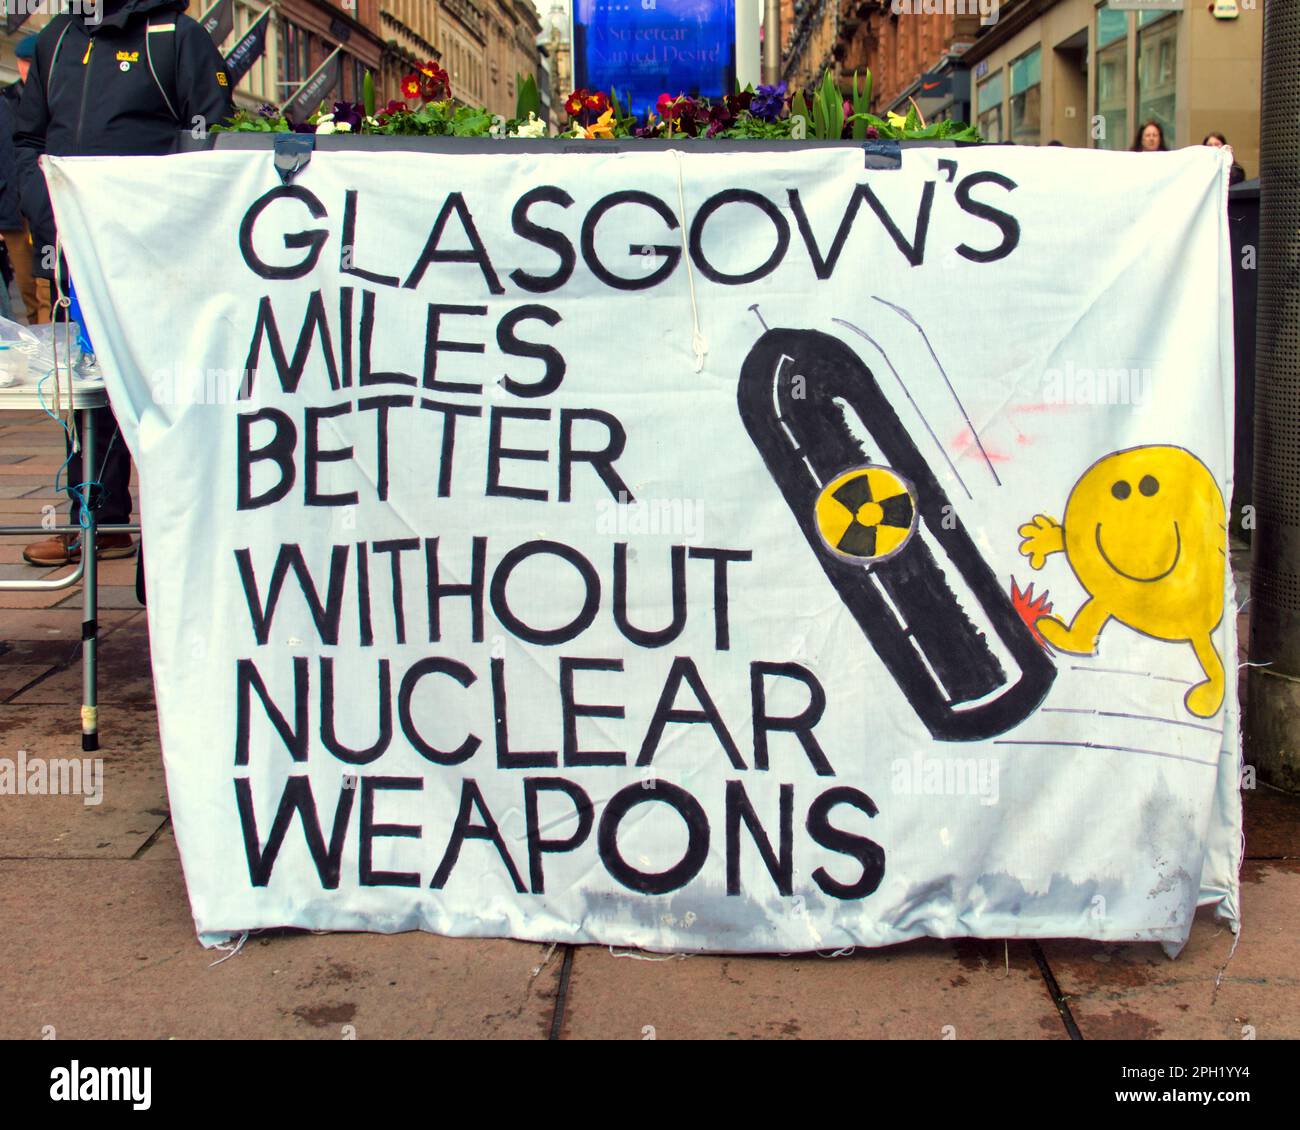 Glasgow CND auf sauchiehall Street, atomfreie Banner, nae Nuklear und Glasgow ist Meilen besser ohne Atomwaffen Stockfoto